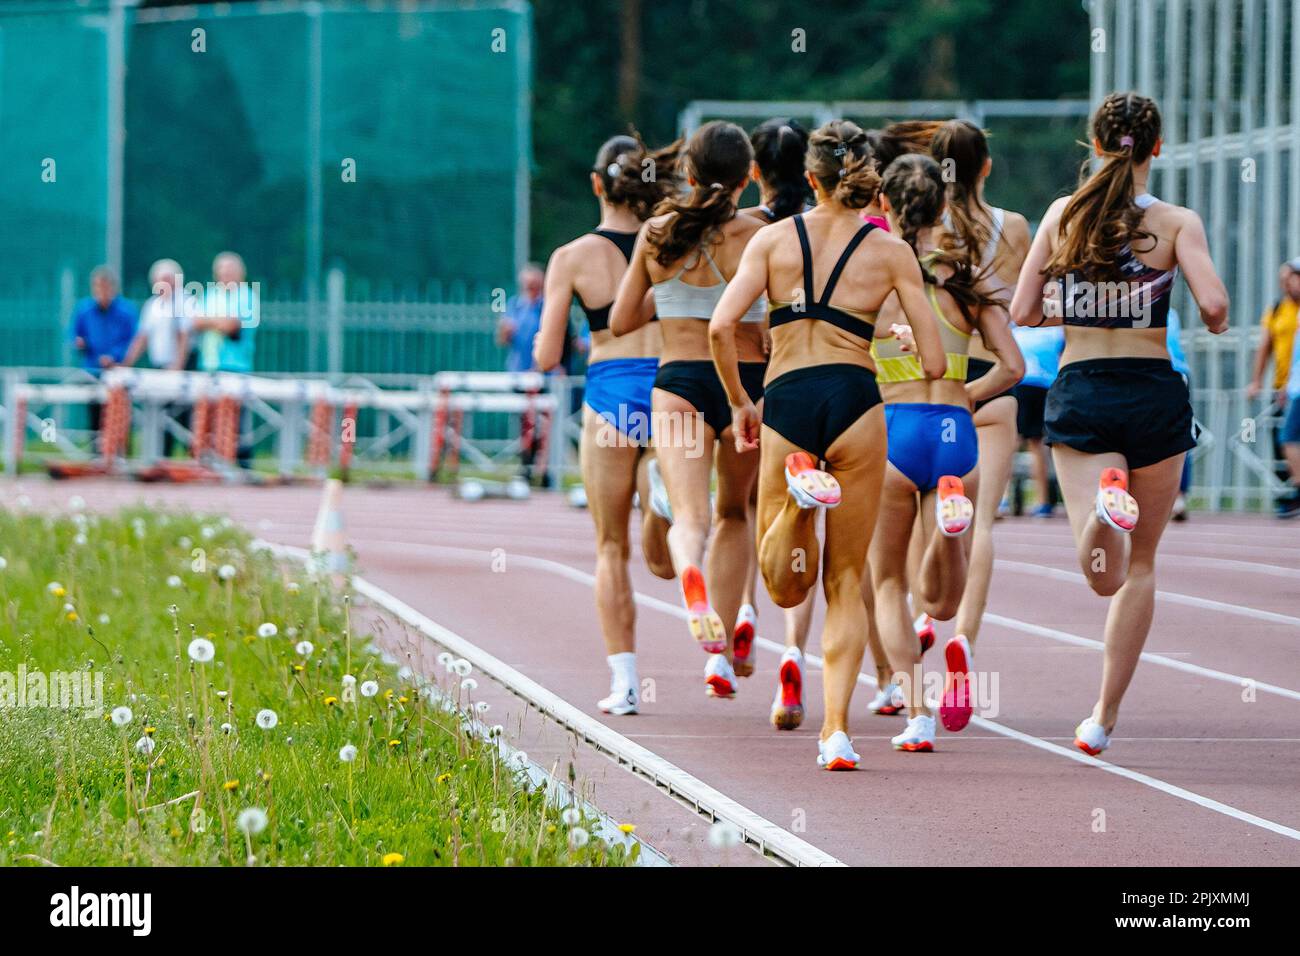 groupe arrière de coureurs féminins course de distance moyenne, championnats d'athlétisme d'été au stade, piste de jogging pour femmes Banque D'Images